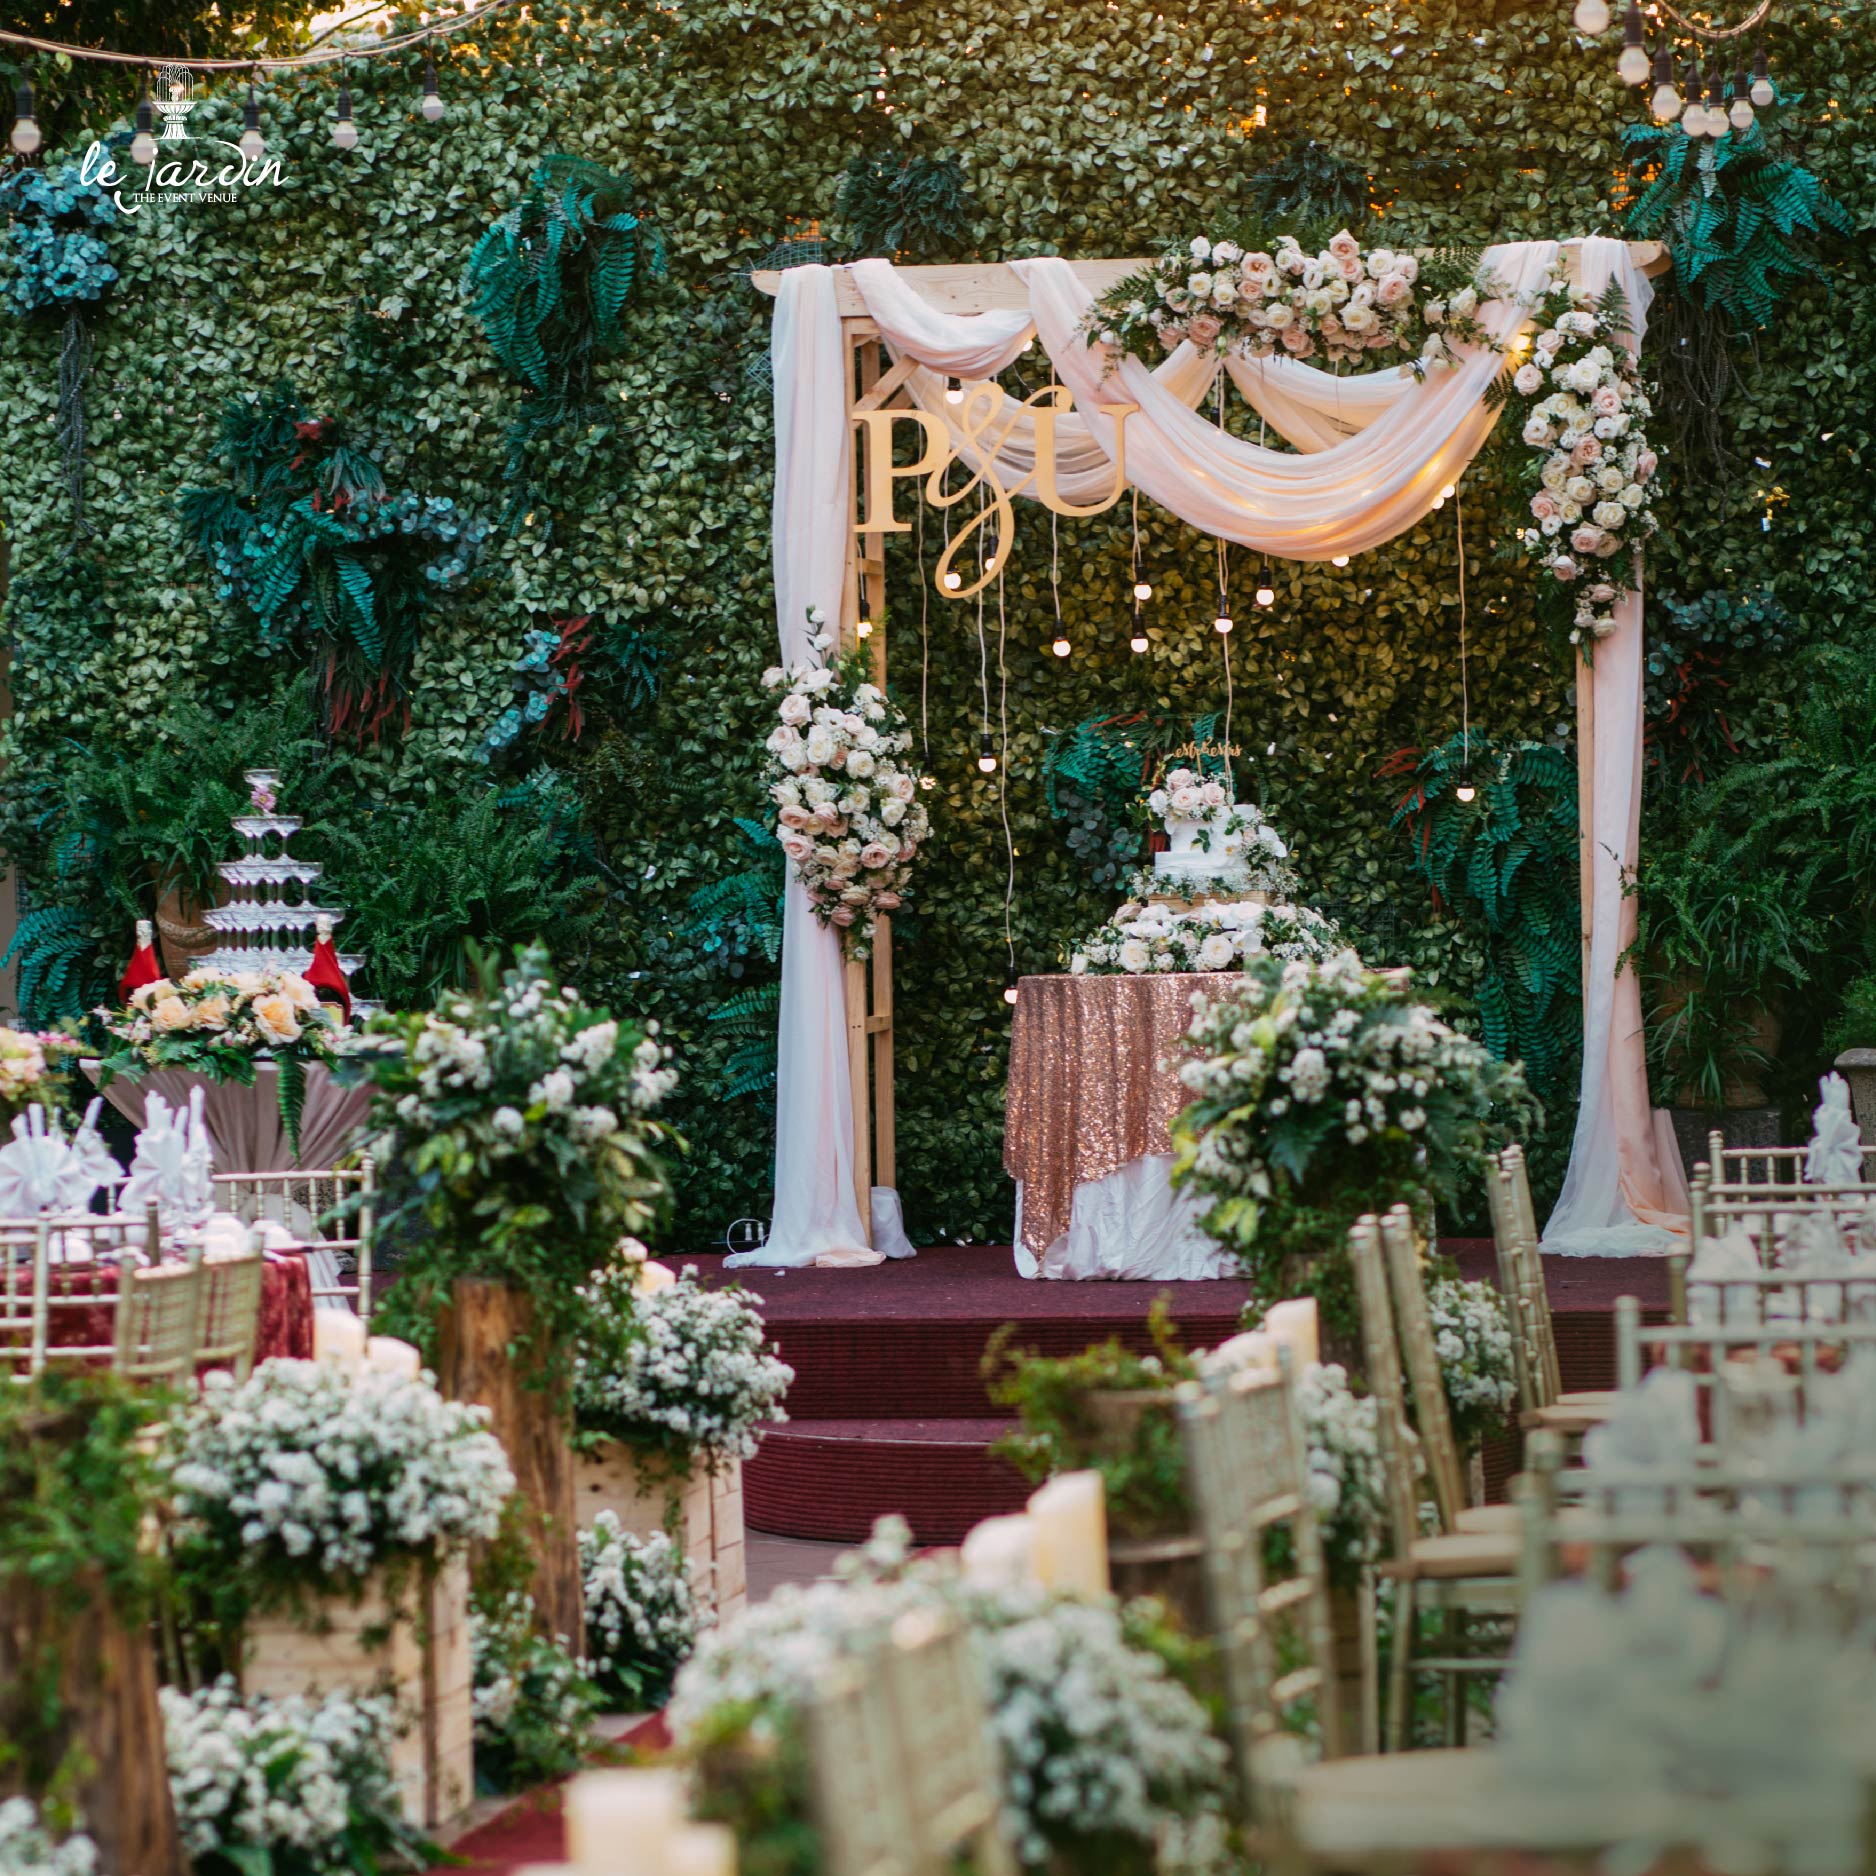 Rose Garden - Tiệc cưới ngoài trời phong cách Pháp